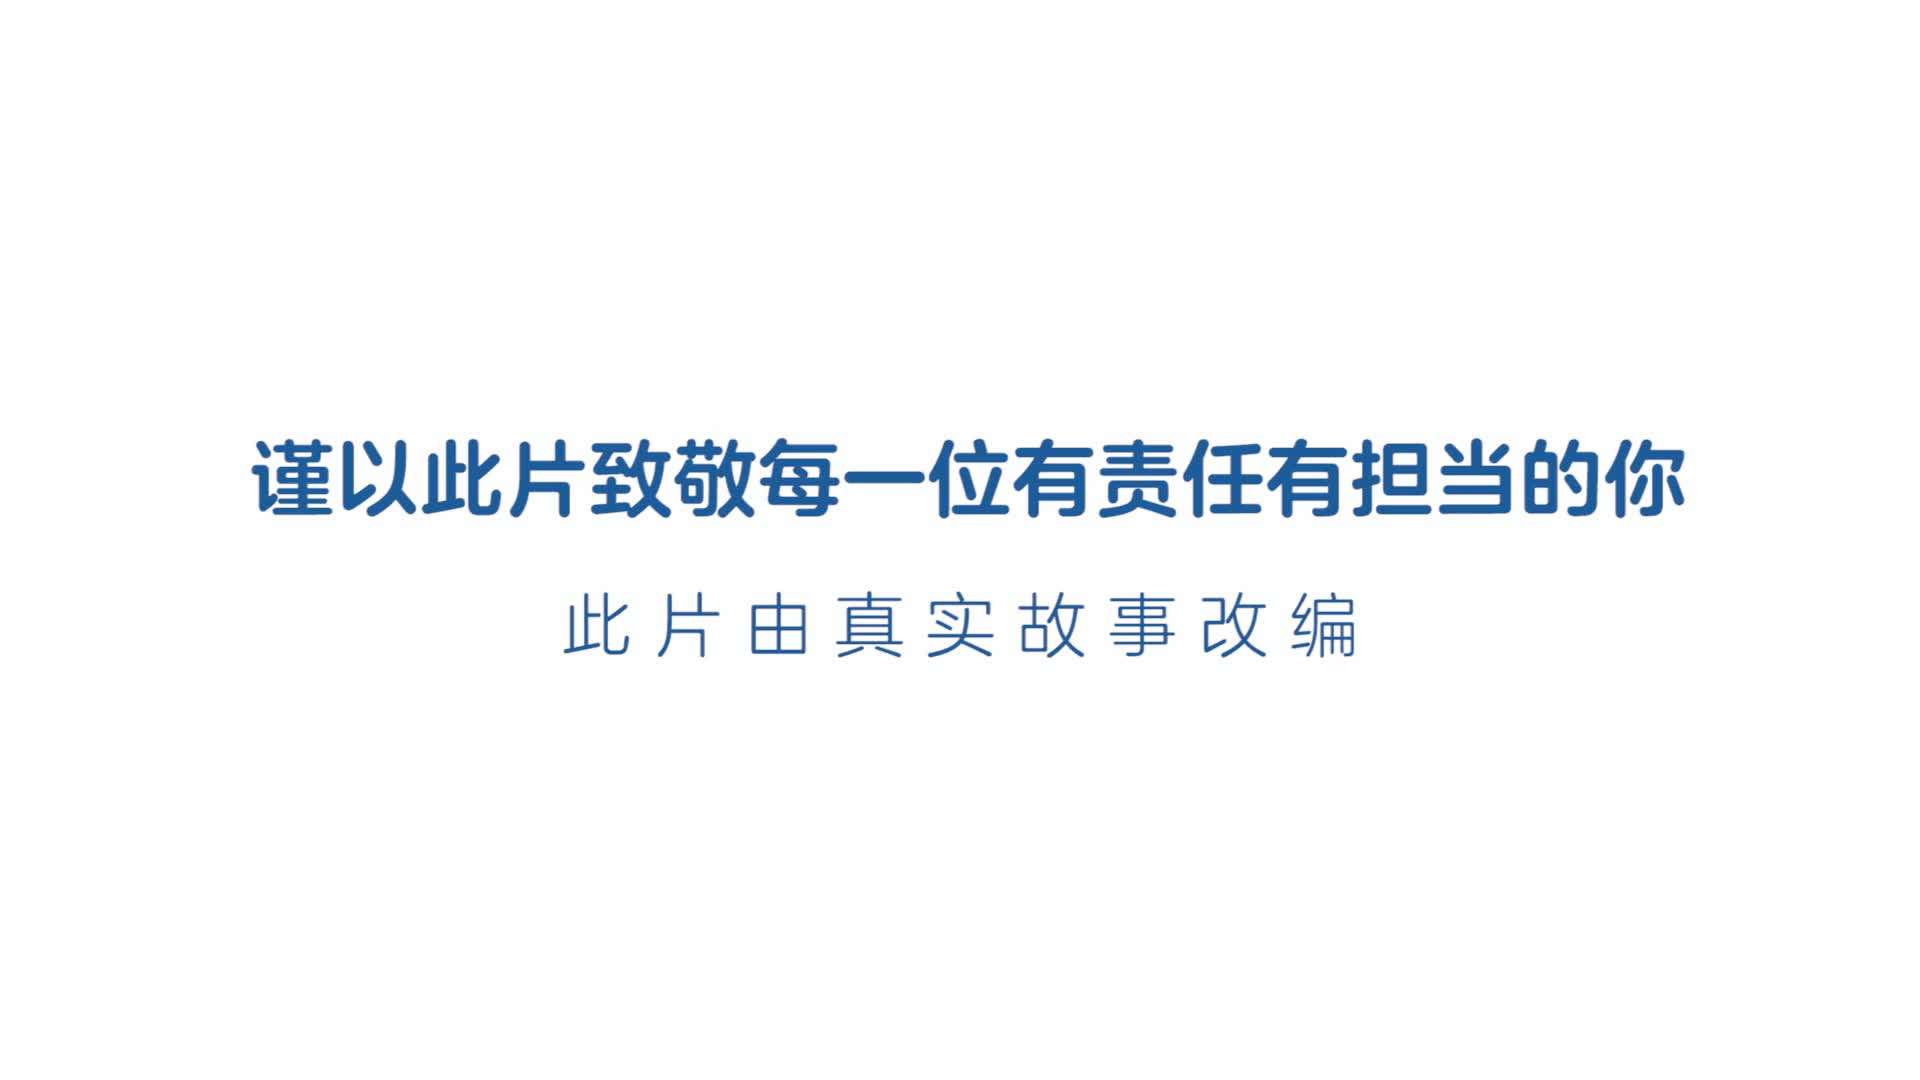 中国太平洋保险 责任篇 谢震业